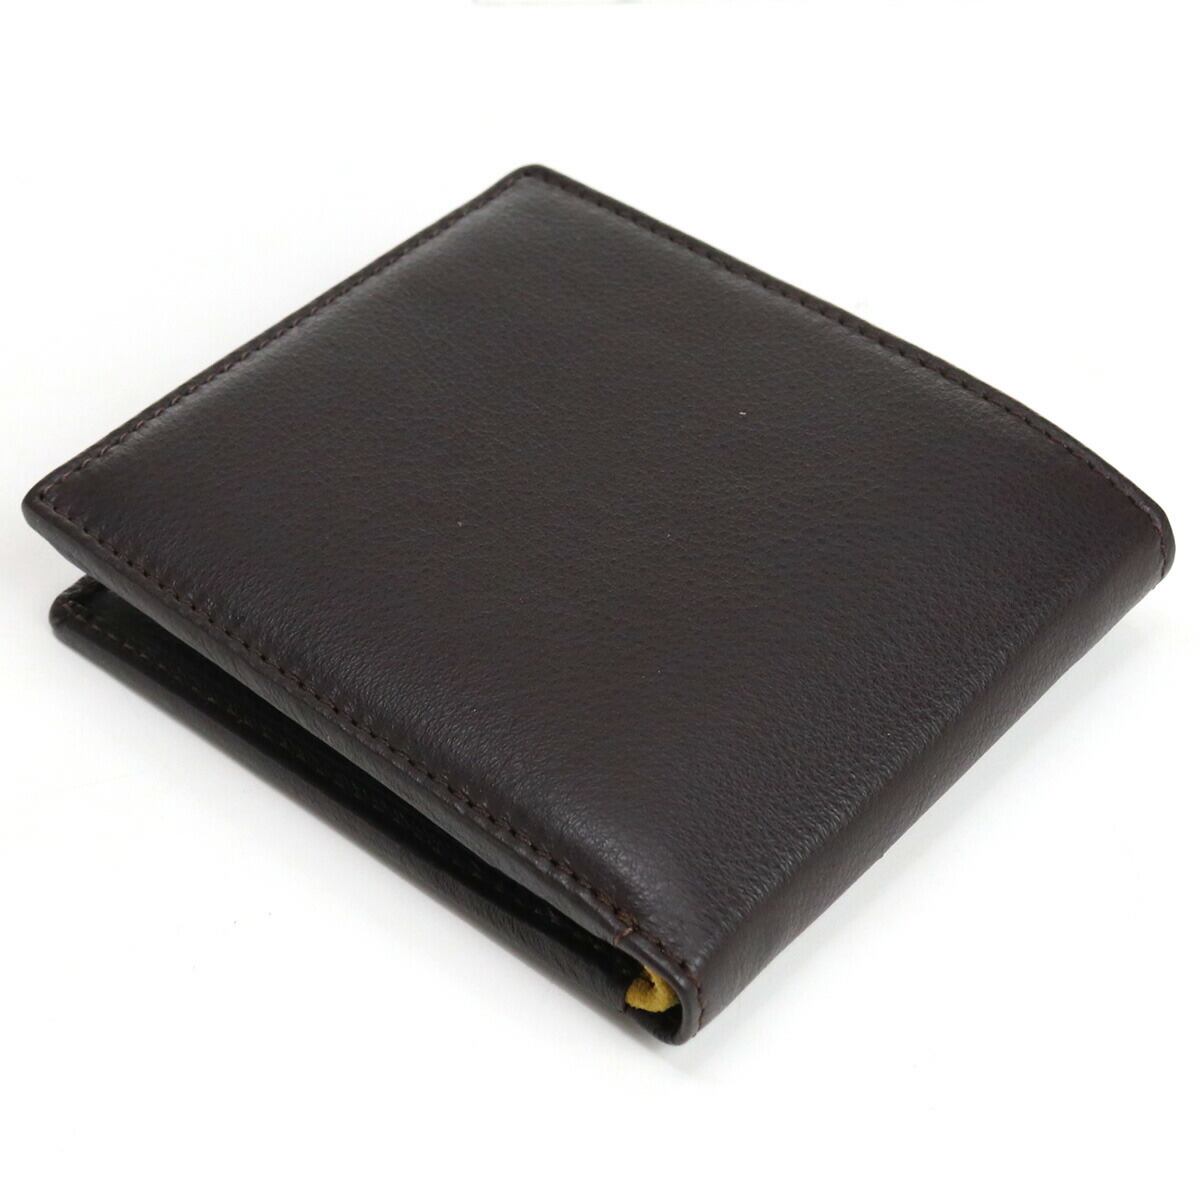 ディーゼル 二つ折財布 X08424 P0685 H9031 ブラウン系